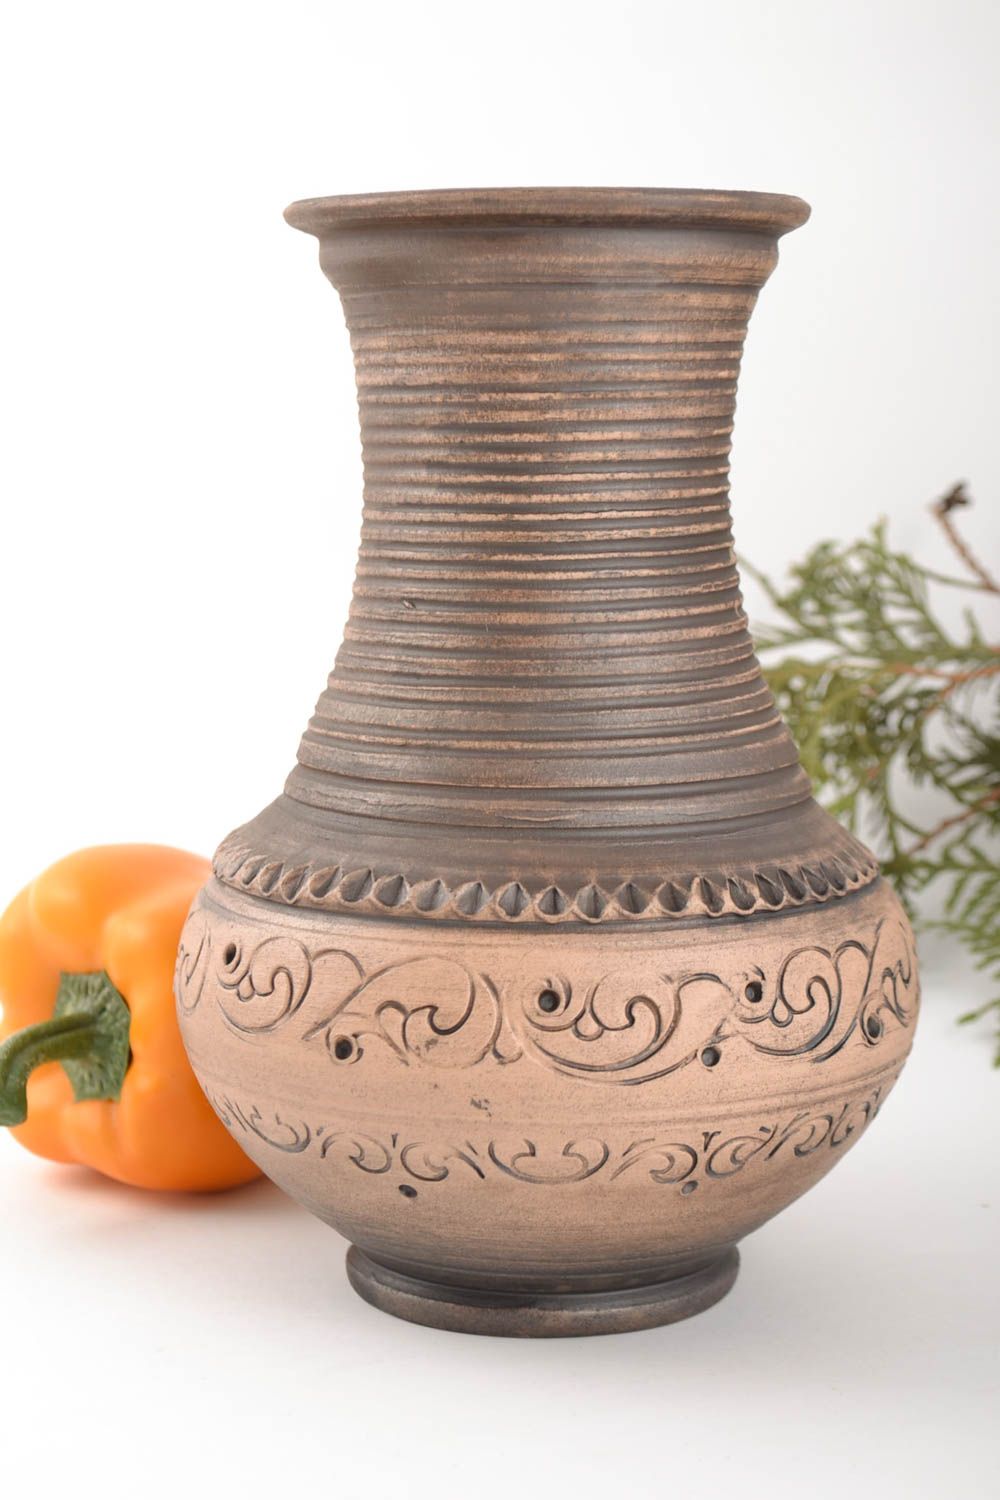 Belle cruche céramique ornementée sans anse 1 litre faite main marron ethnique photo 1